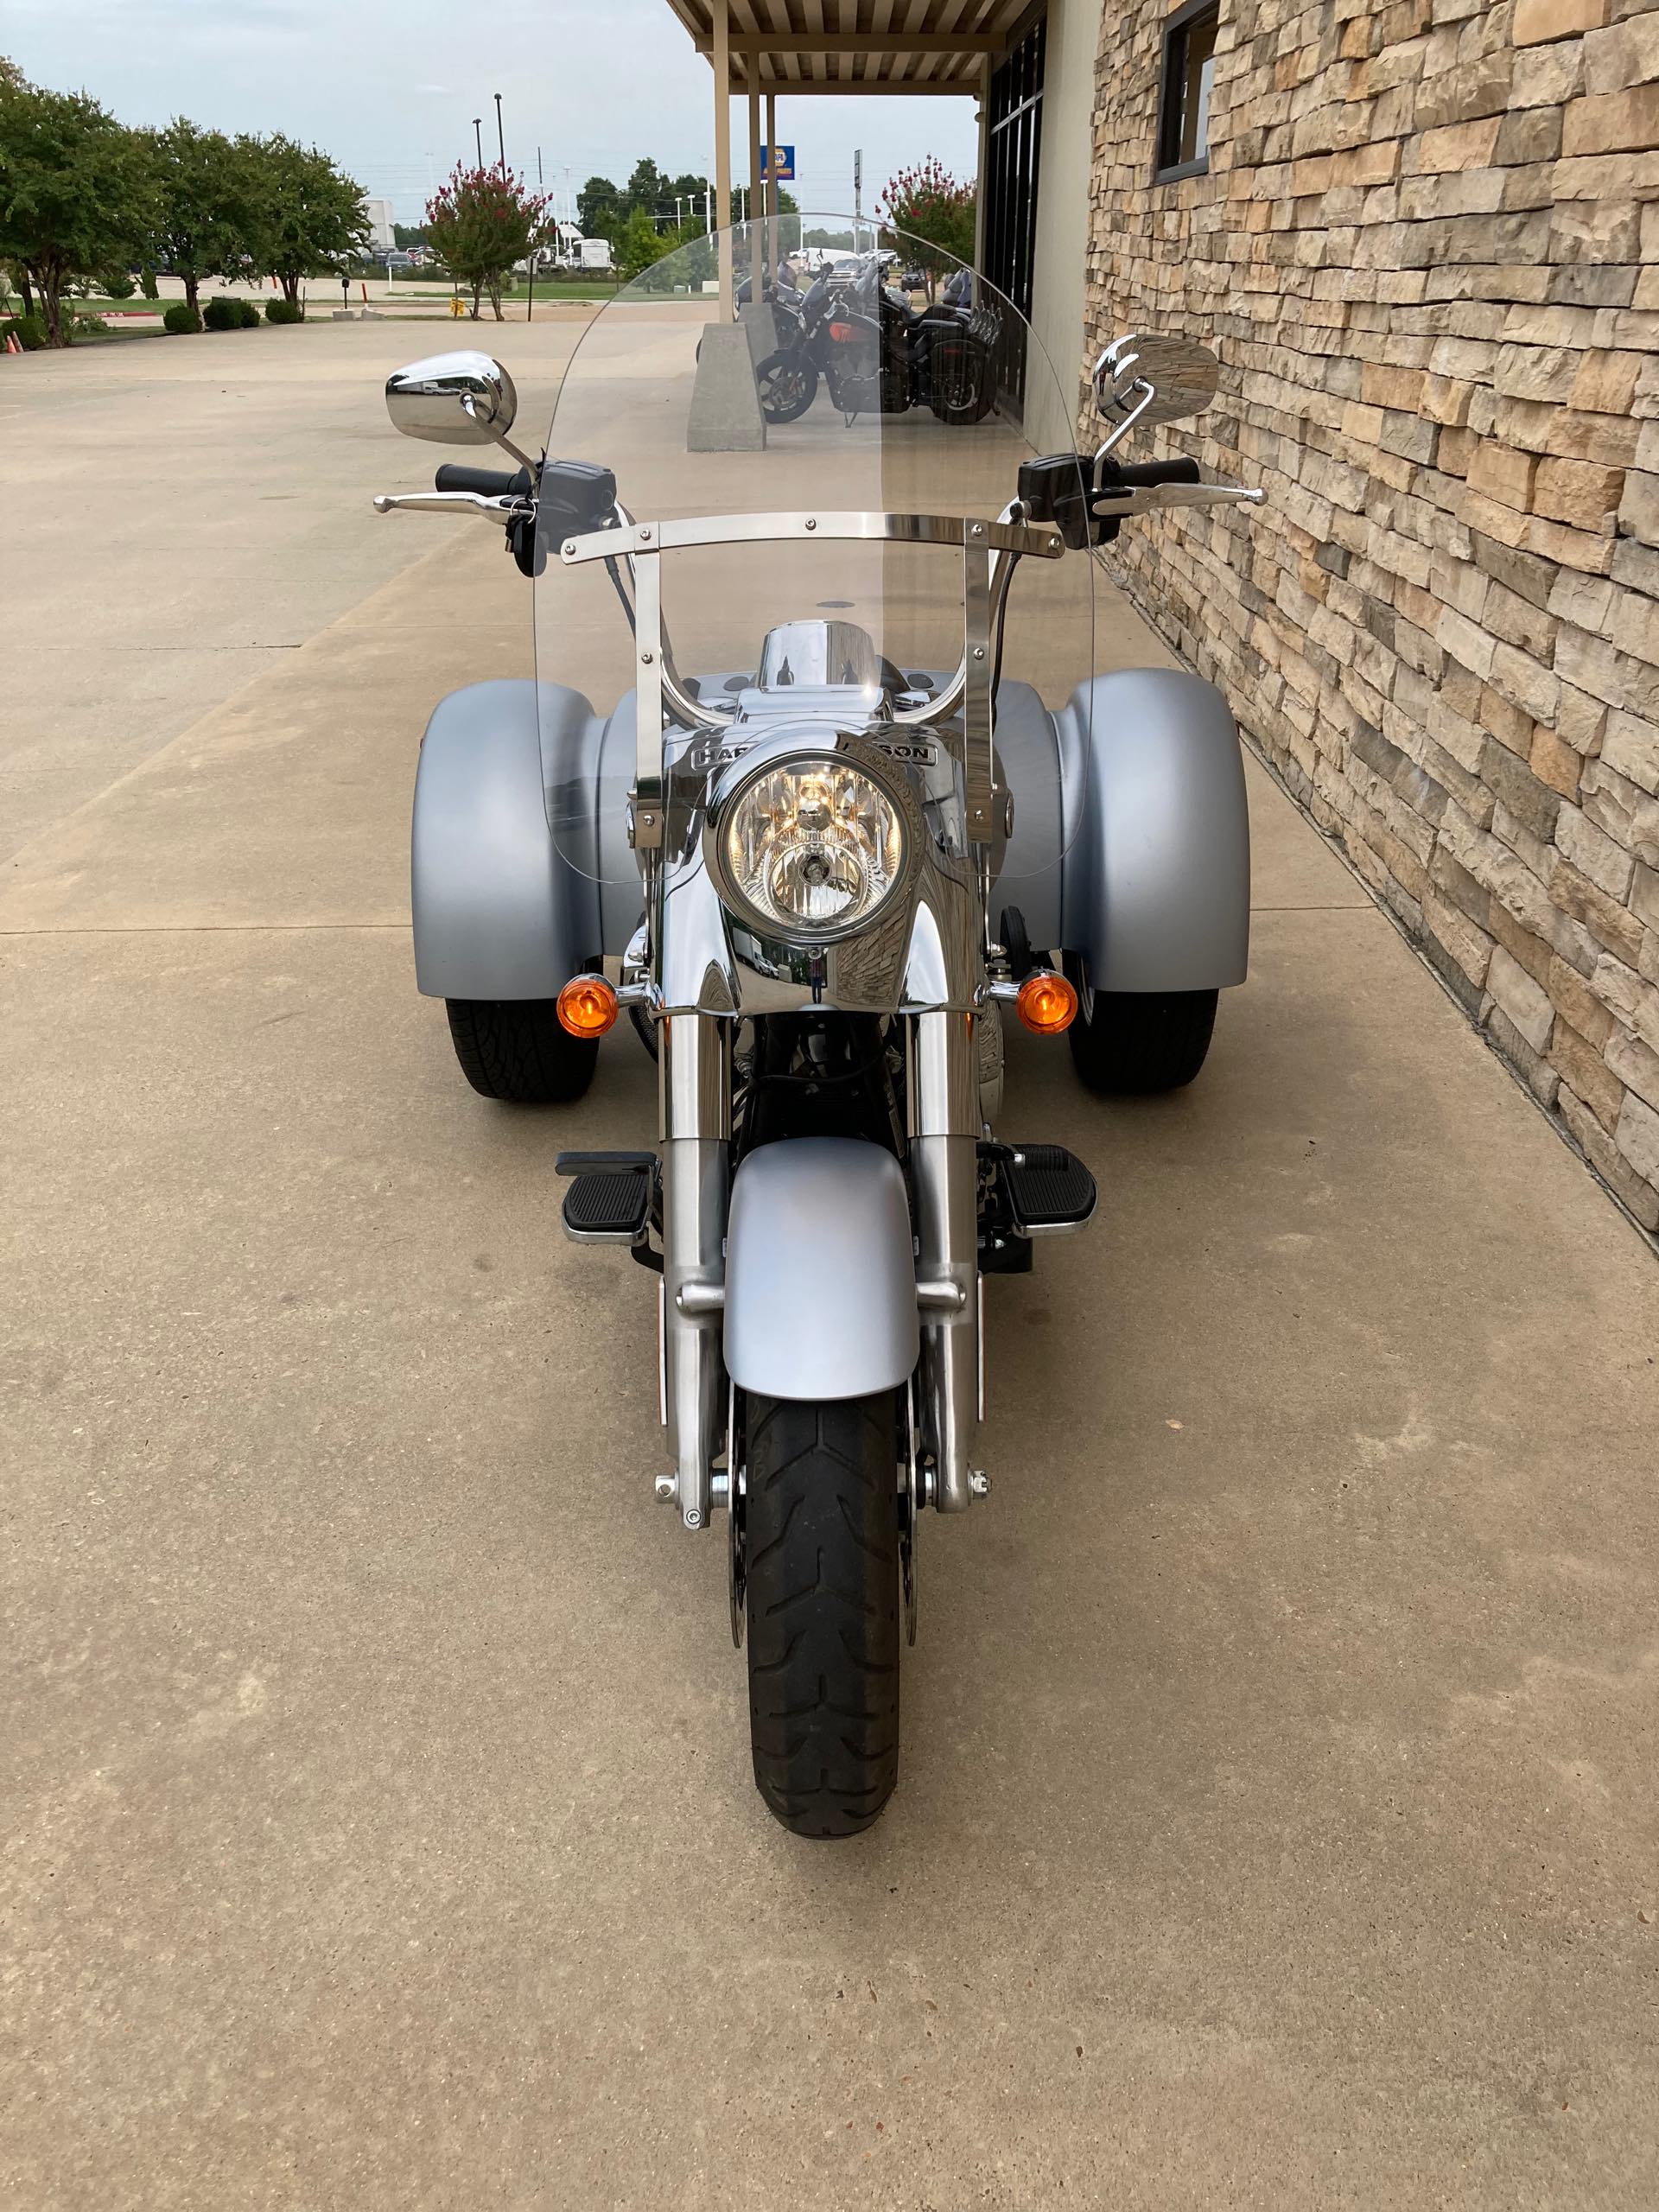 2020 Harley-Davidson Trike Freewheeler at 3 State Harley-Davidson